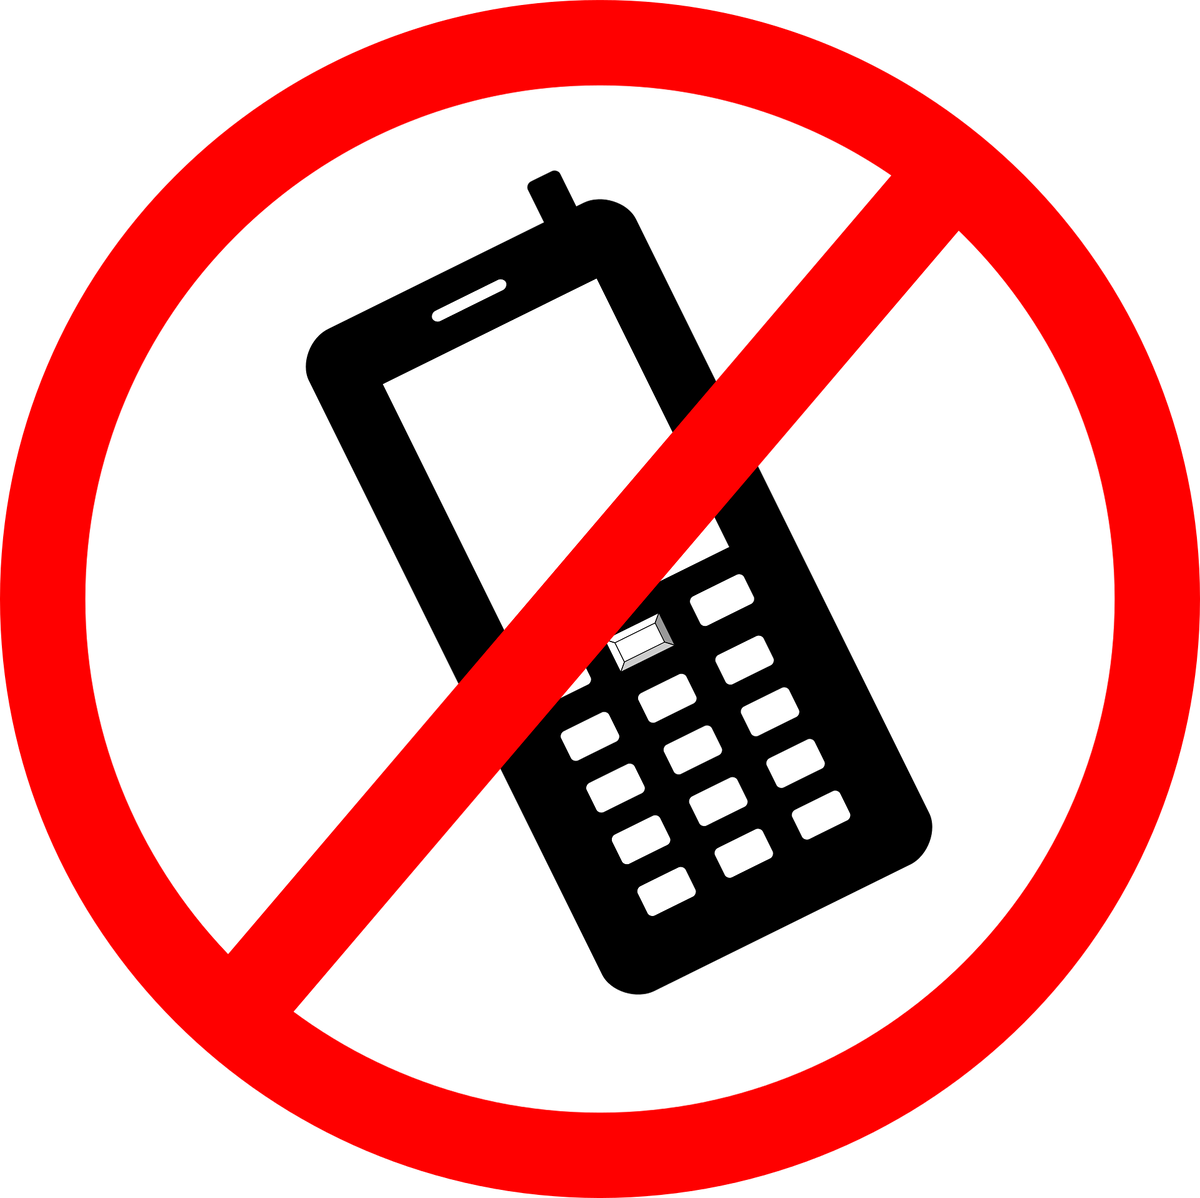 Мобильные телефоны запрещены. Отключите мобильные телефоны. Выключите мобильные телефоны. Выключить телефон знак.